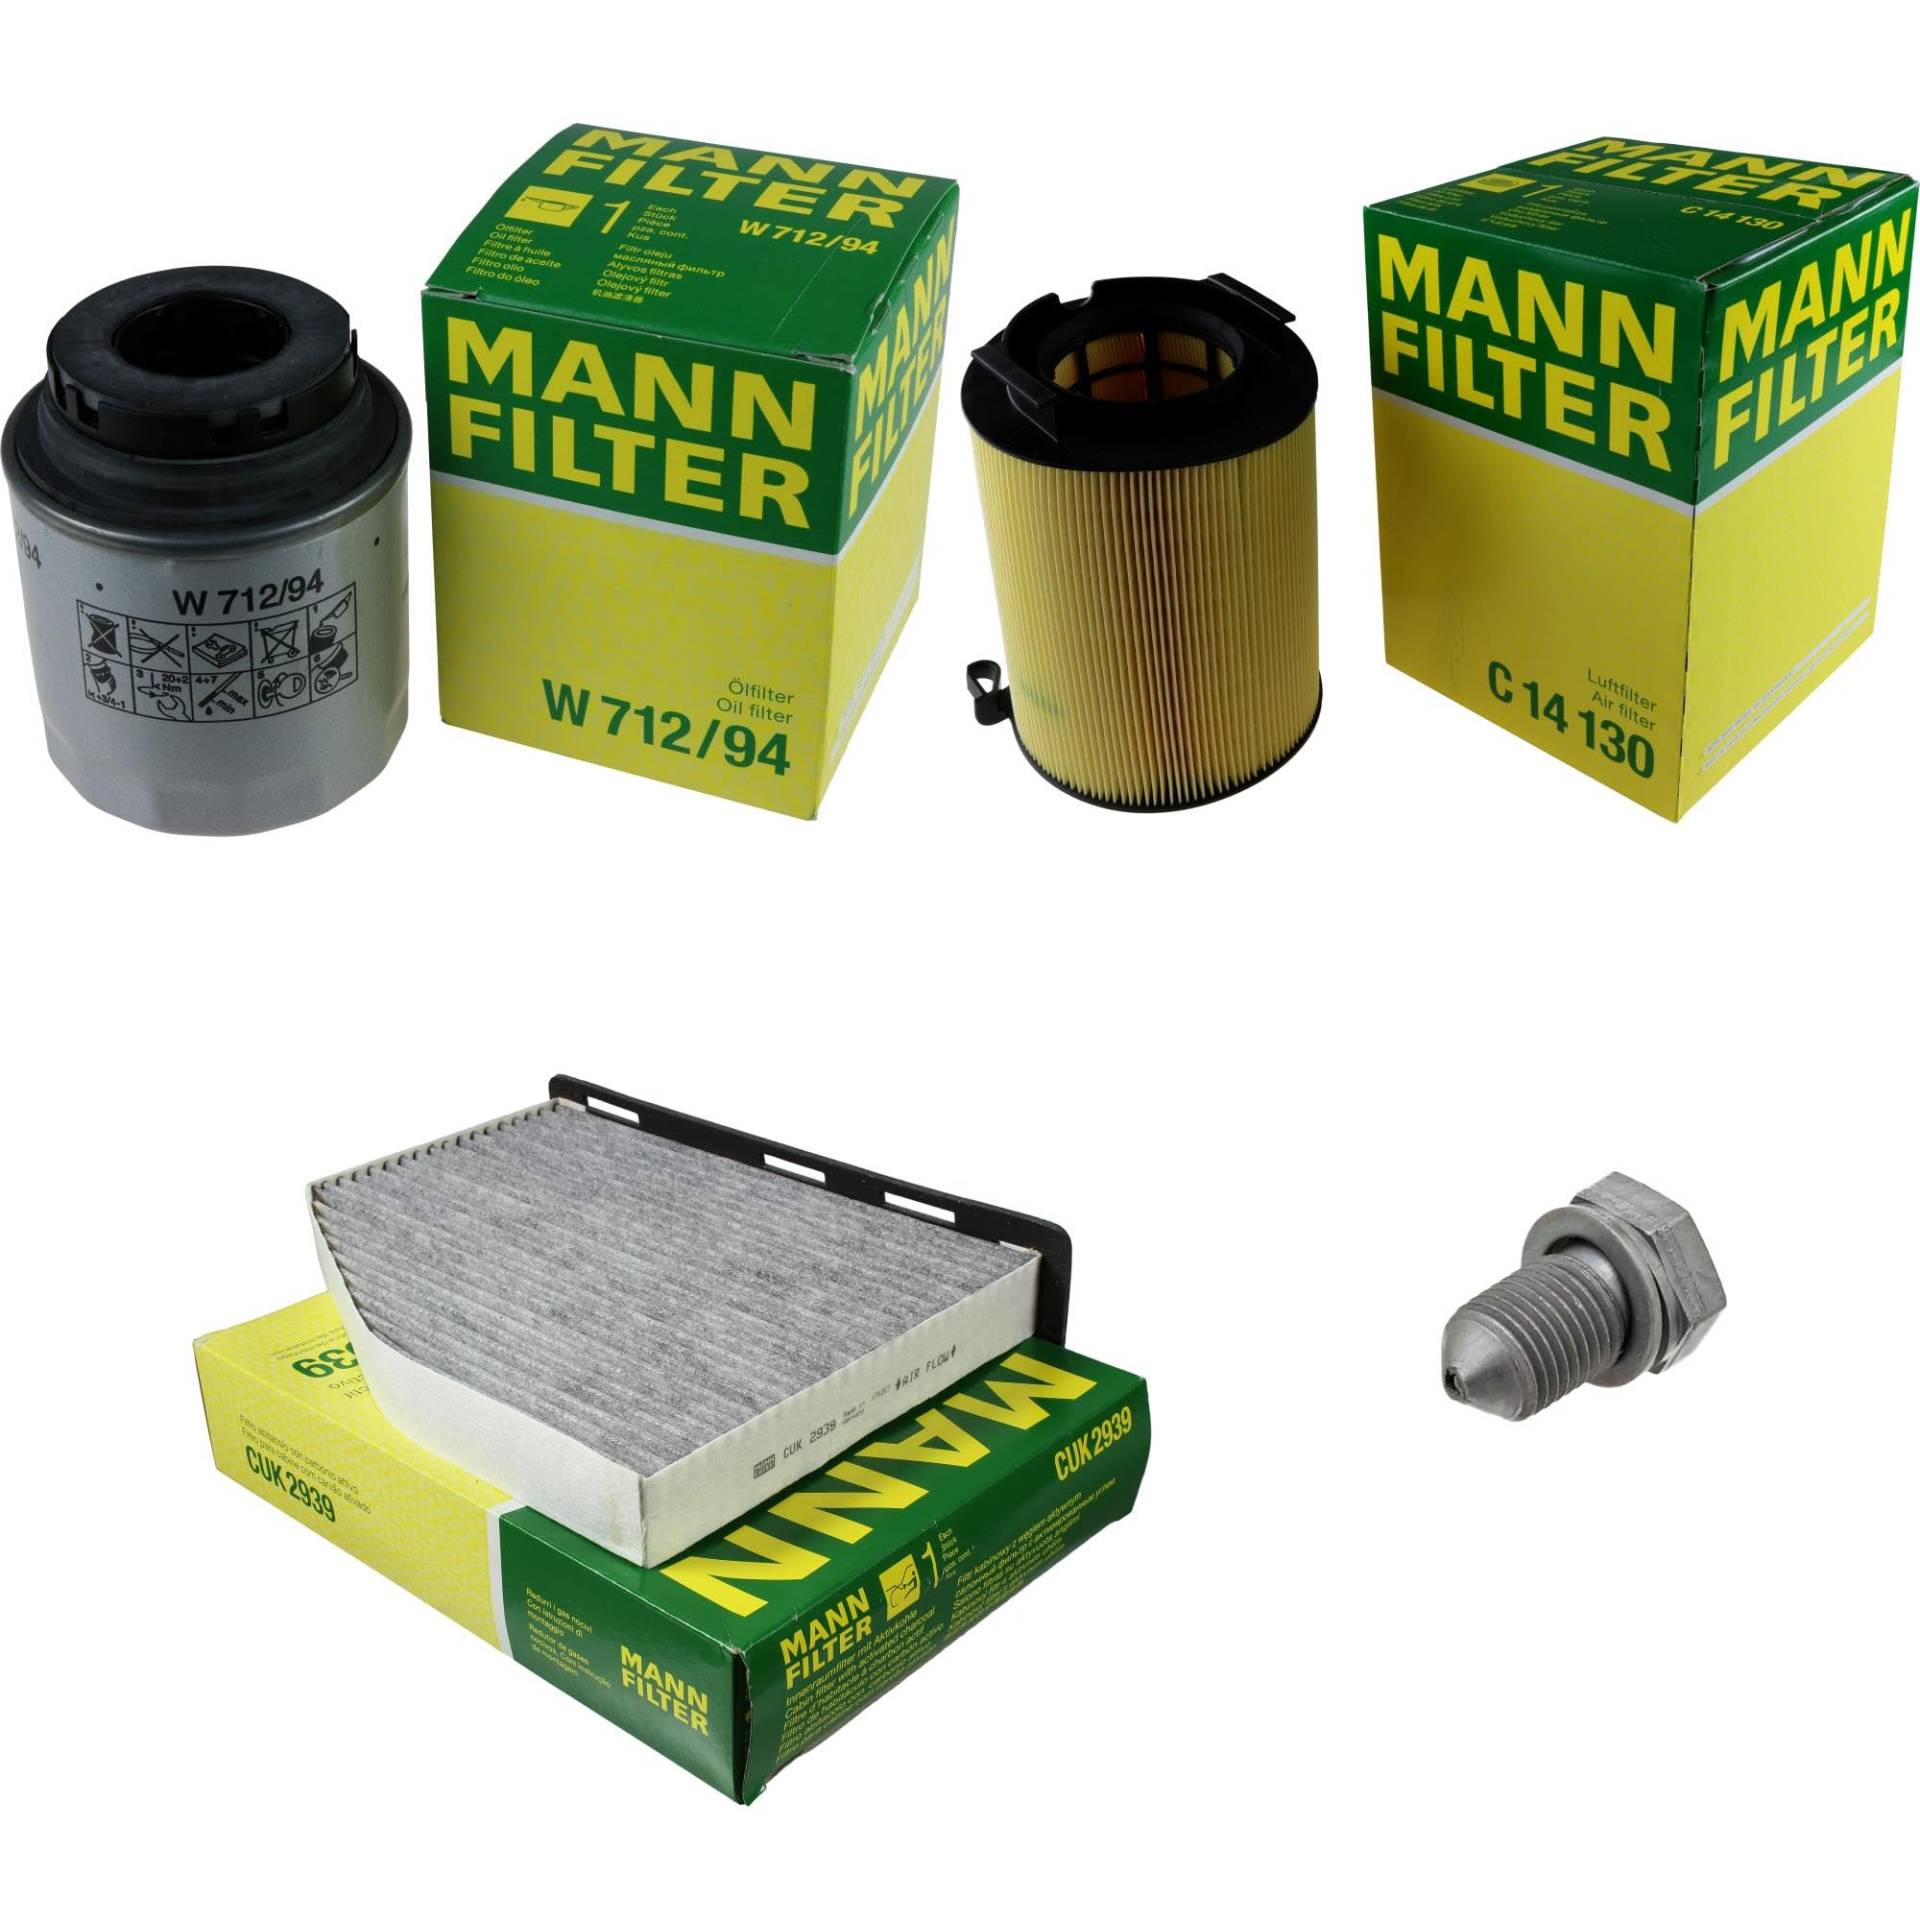 EISENFELS Filter Set Inspektionspaket erstellt mit MANN-FILTER Ölfilter W 712/94, Luftfilter C 14 130, Innenraumfilter CUK 2939, Verschlussschraube von EISENFELS